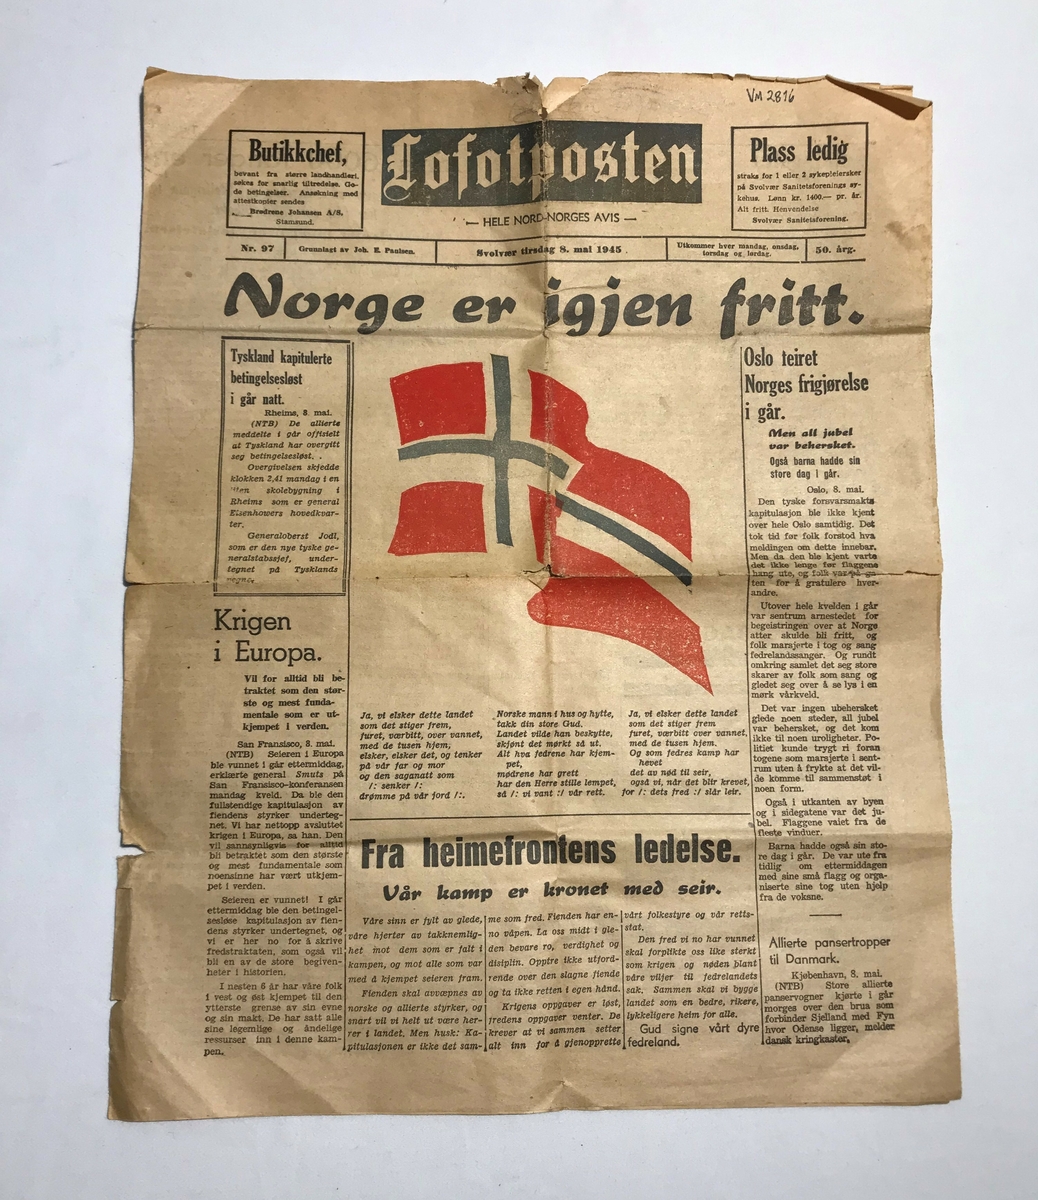 Lokalavis, Frigjøringen av Norge, 8. mai 1945. "Norge er igjen fritt", 